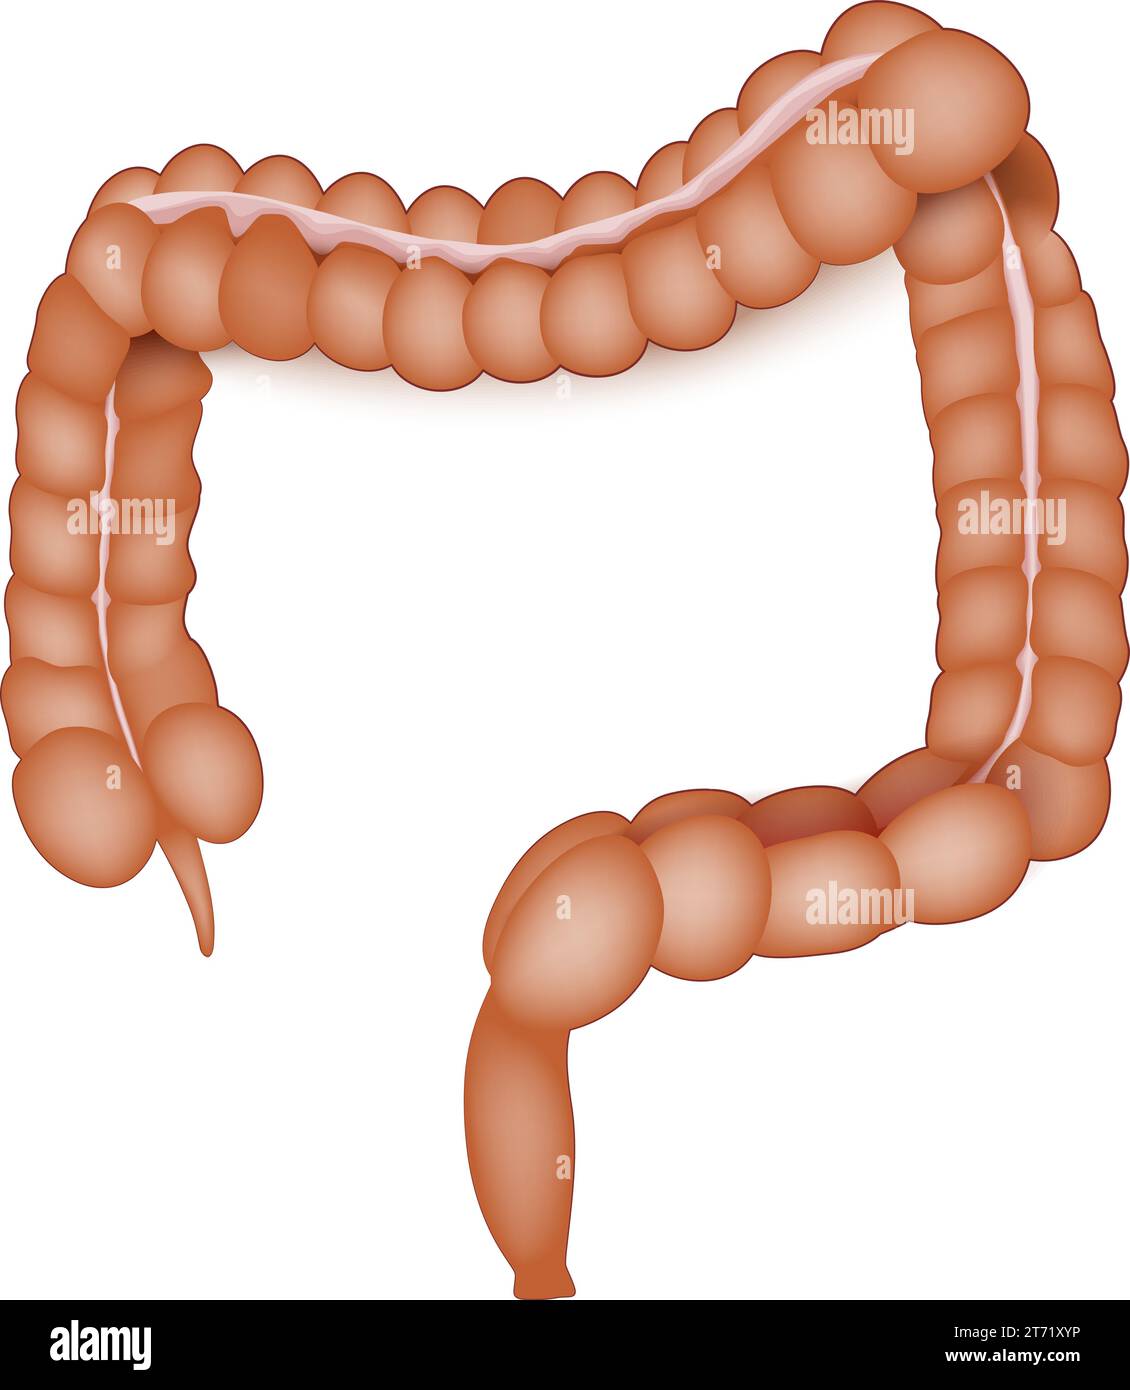 anatomia dell'intestino crasso. Colon umano su sfondo bianco. Tratto intestinale dell'apparato digerente. Intestino grande. Illustrazione vettoriale Illustrazione Vettoriale